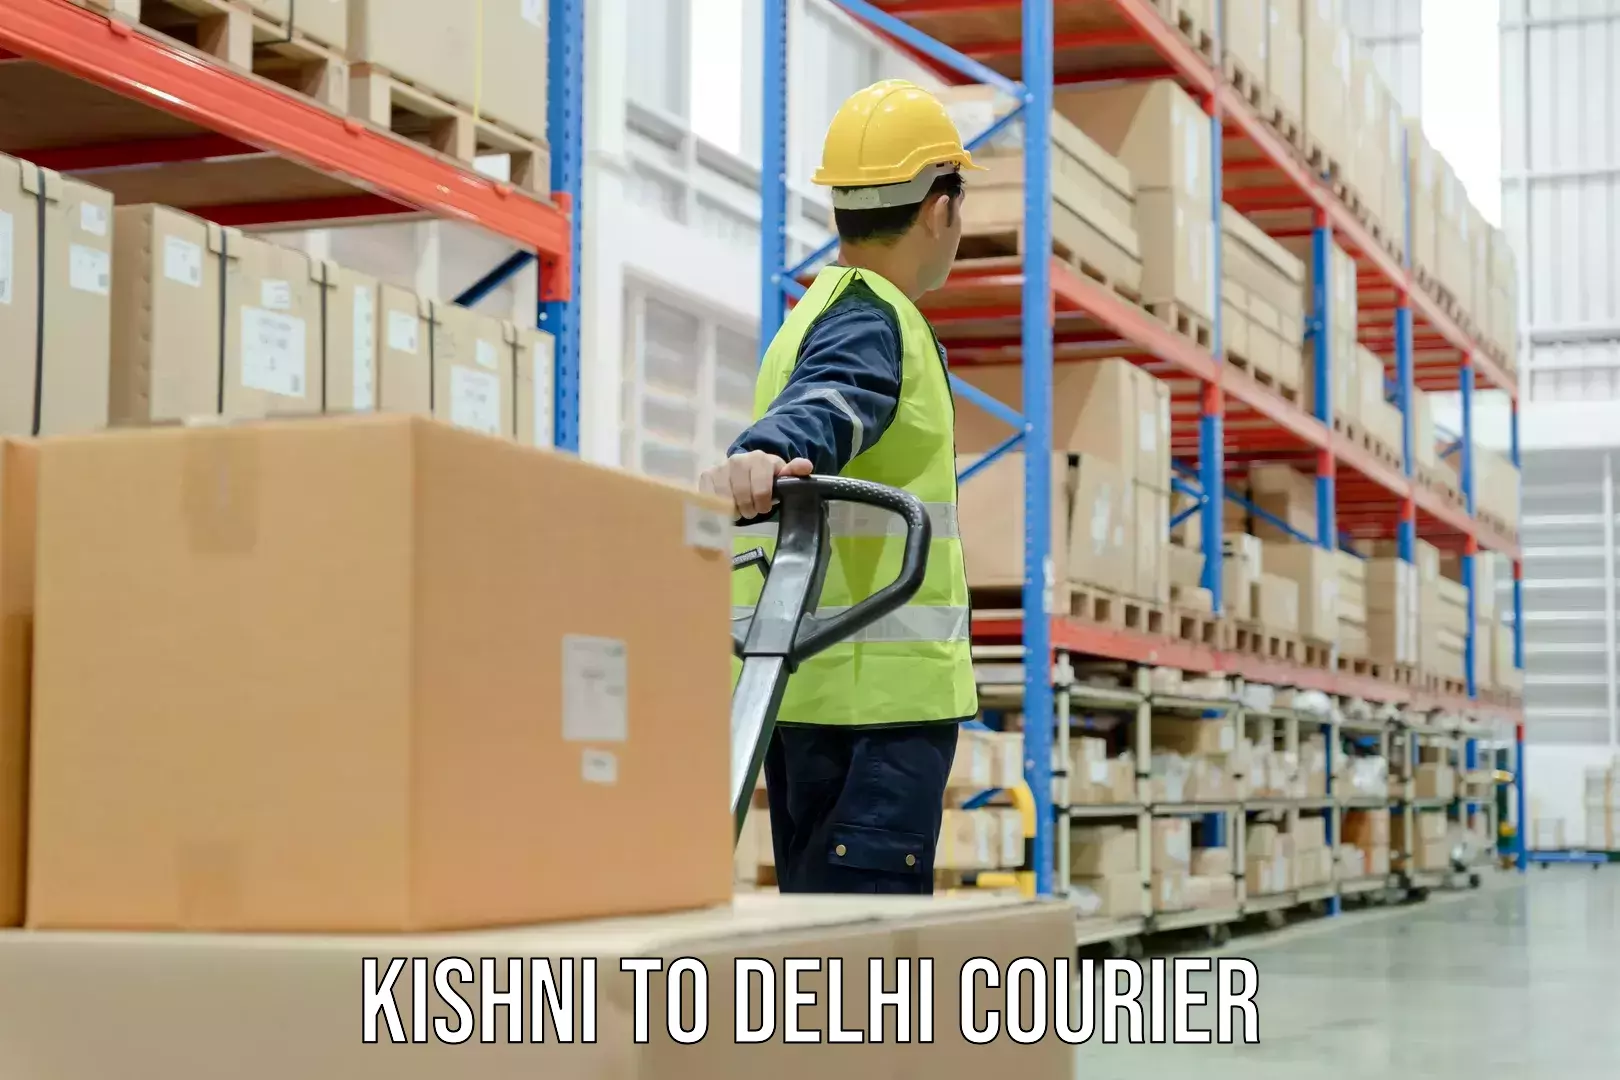 Courier service comparison Kishni to University of Delhi